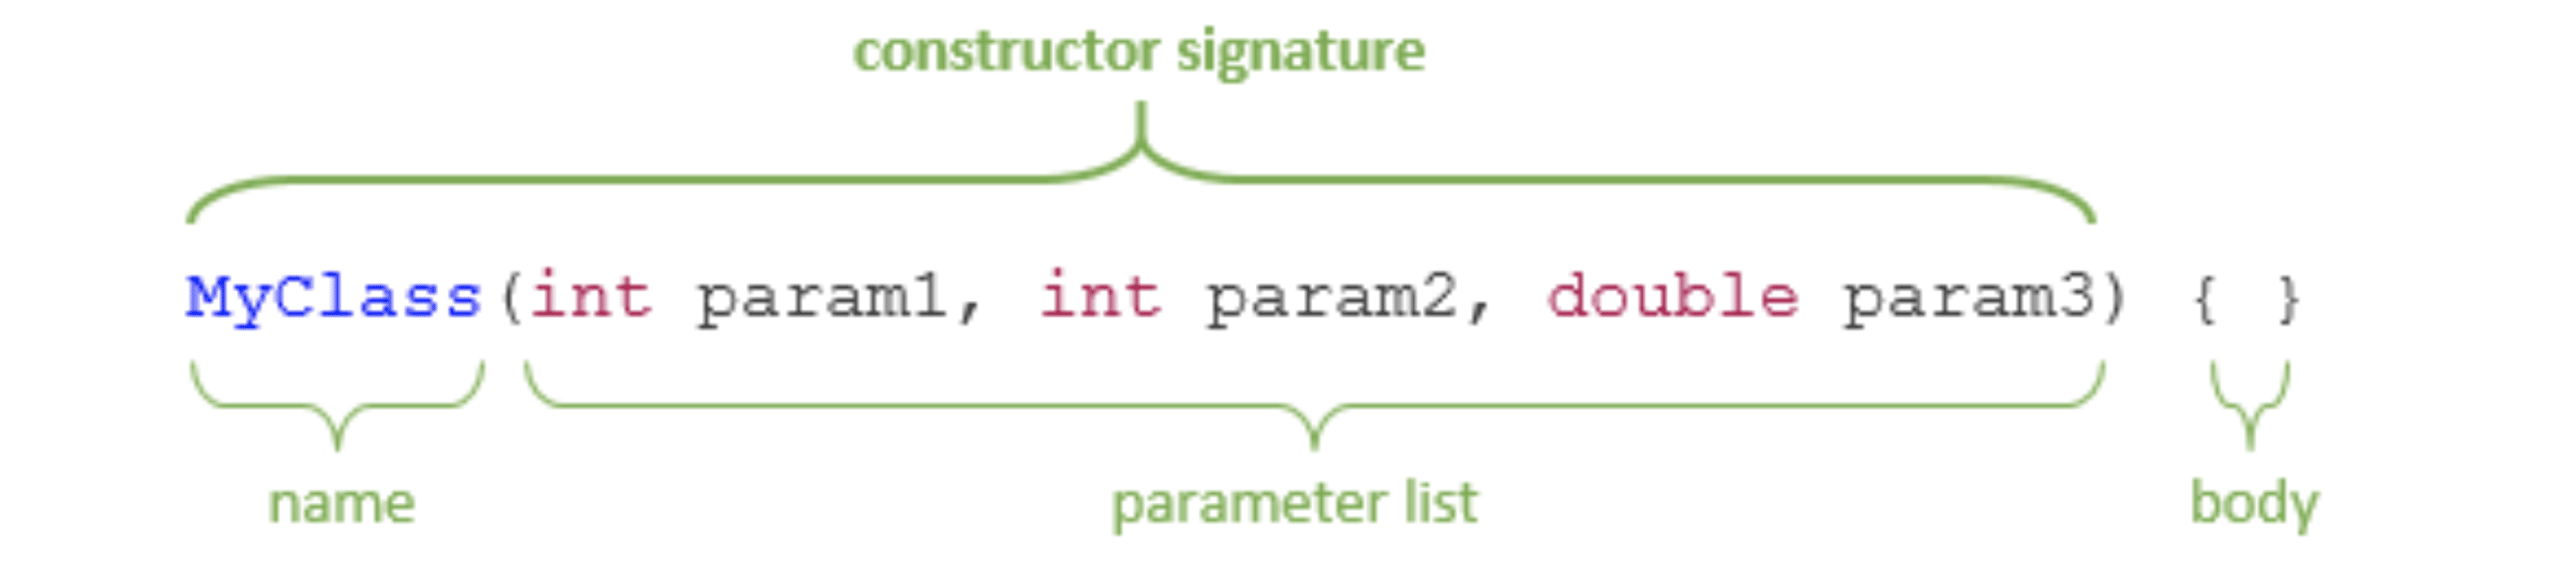 Constructor signature in Java